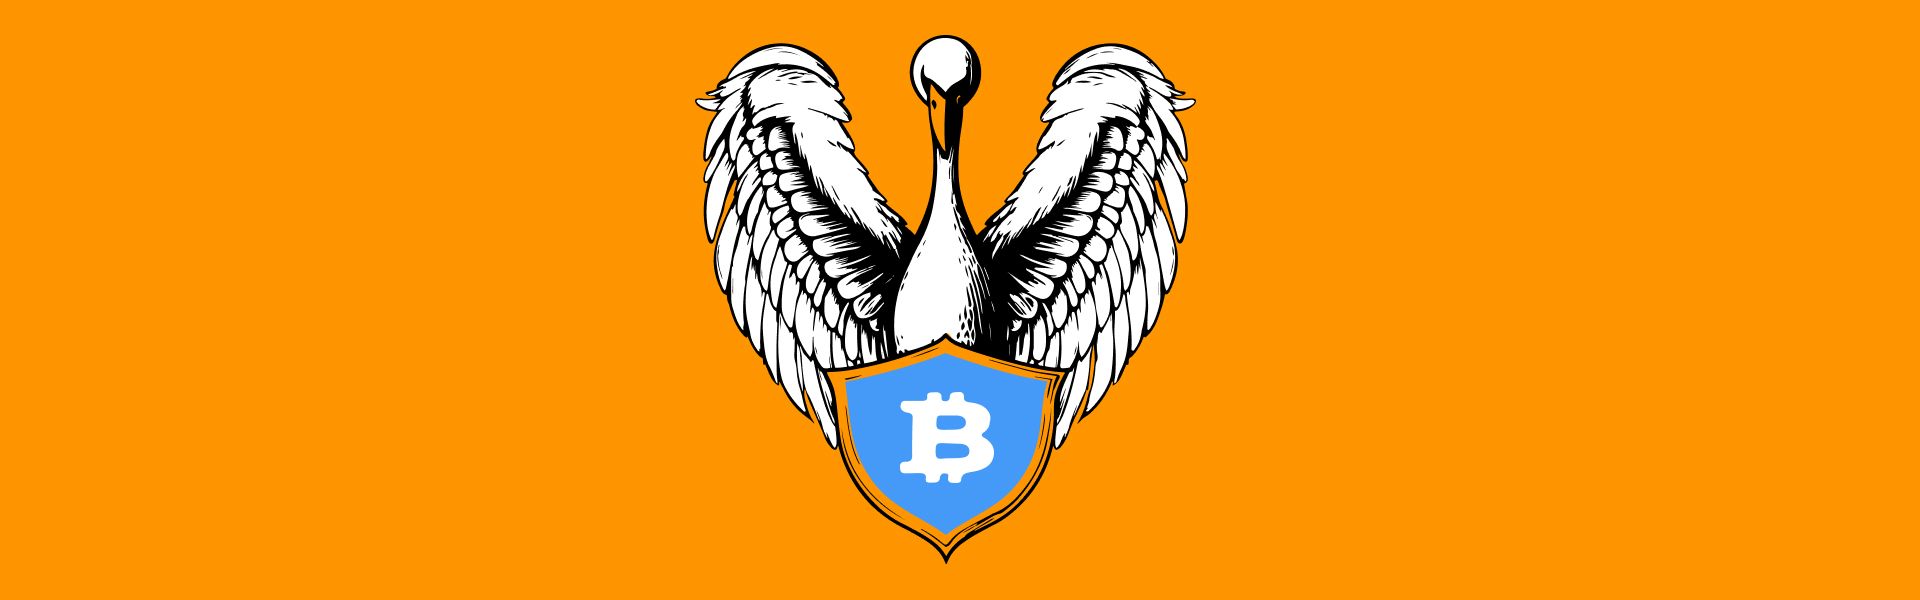 BitGo та Swan створюють трастовий біткоїн-фонд